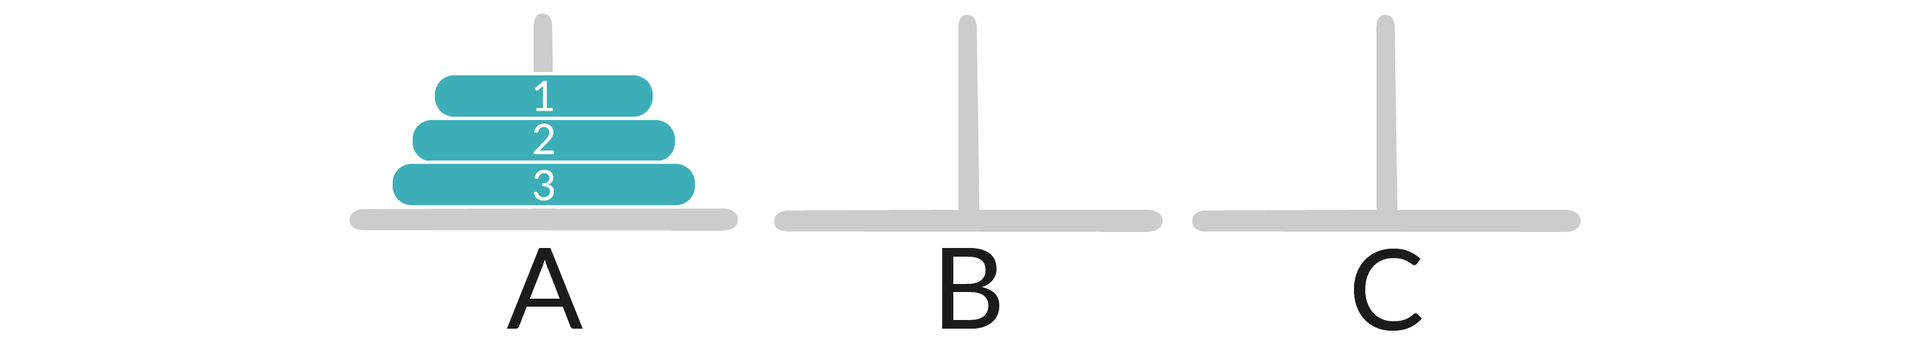 Ilustracja przedstawia trzy pręty oznaczone jako A, B, C. Na pierwszym pręcie są trzy krążki - od dołu do góry od największego do najmniejszego, są ponumerowane 3, 2, 1.  